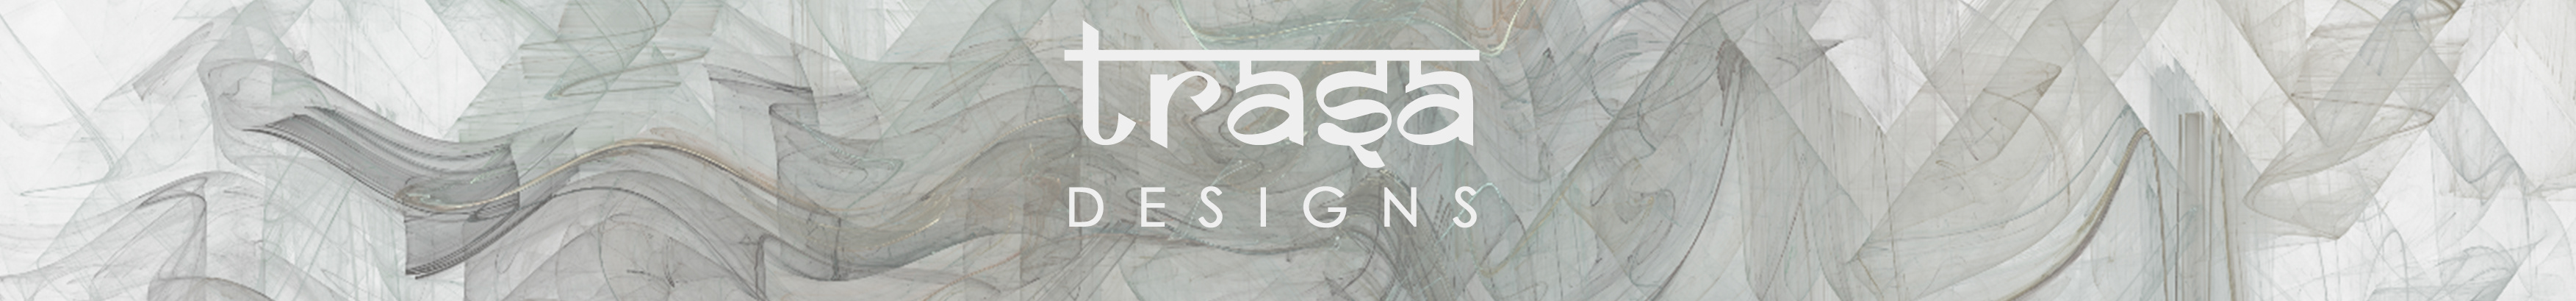 Trasa Designs's profile banner